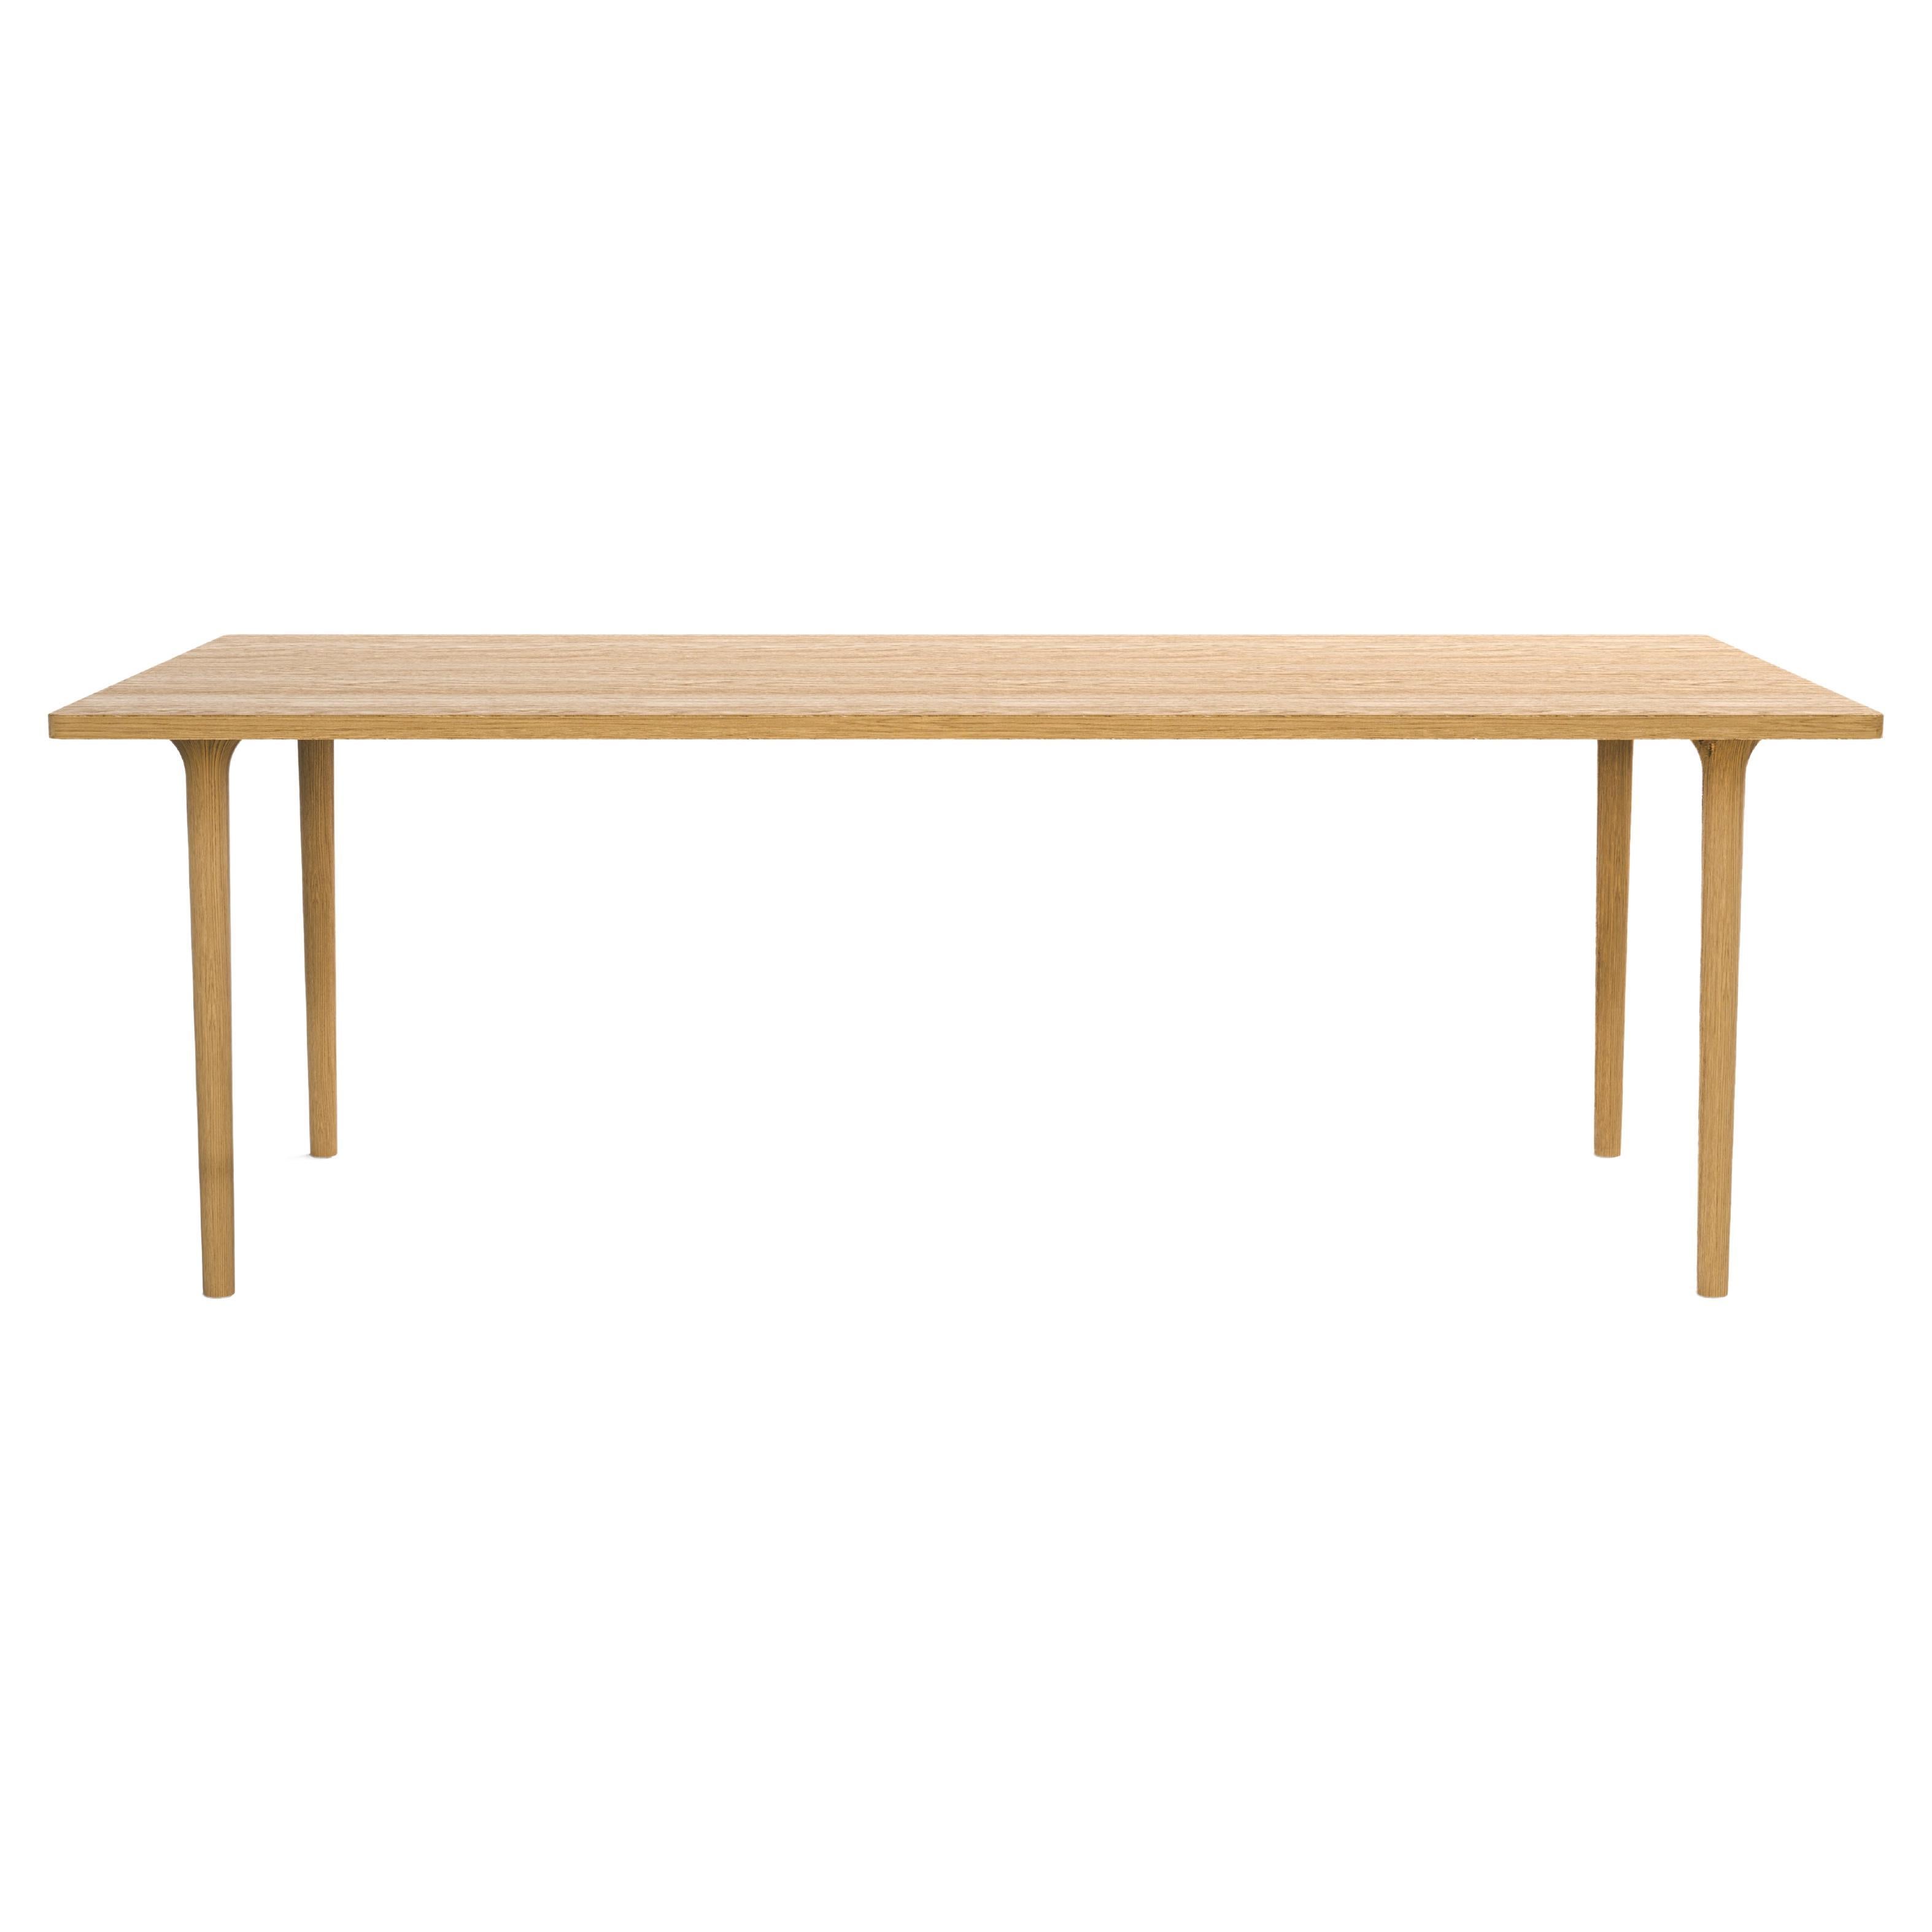 Moderner Tisch aus Eichenholz, rechteckig, modern